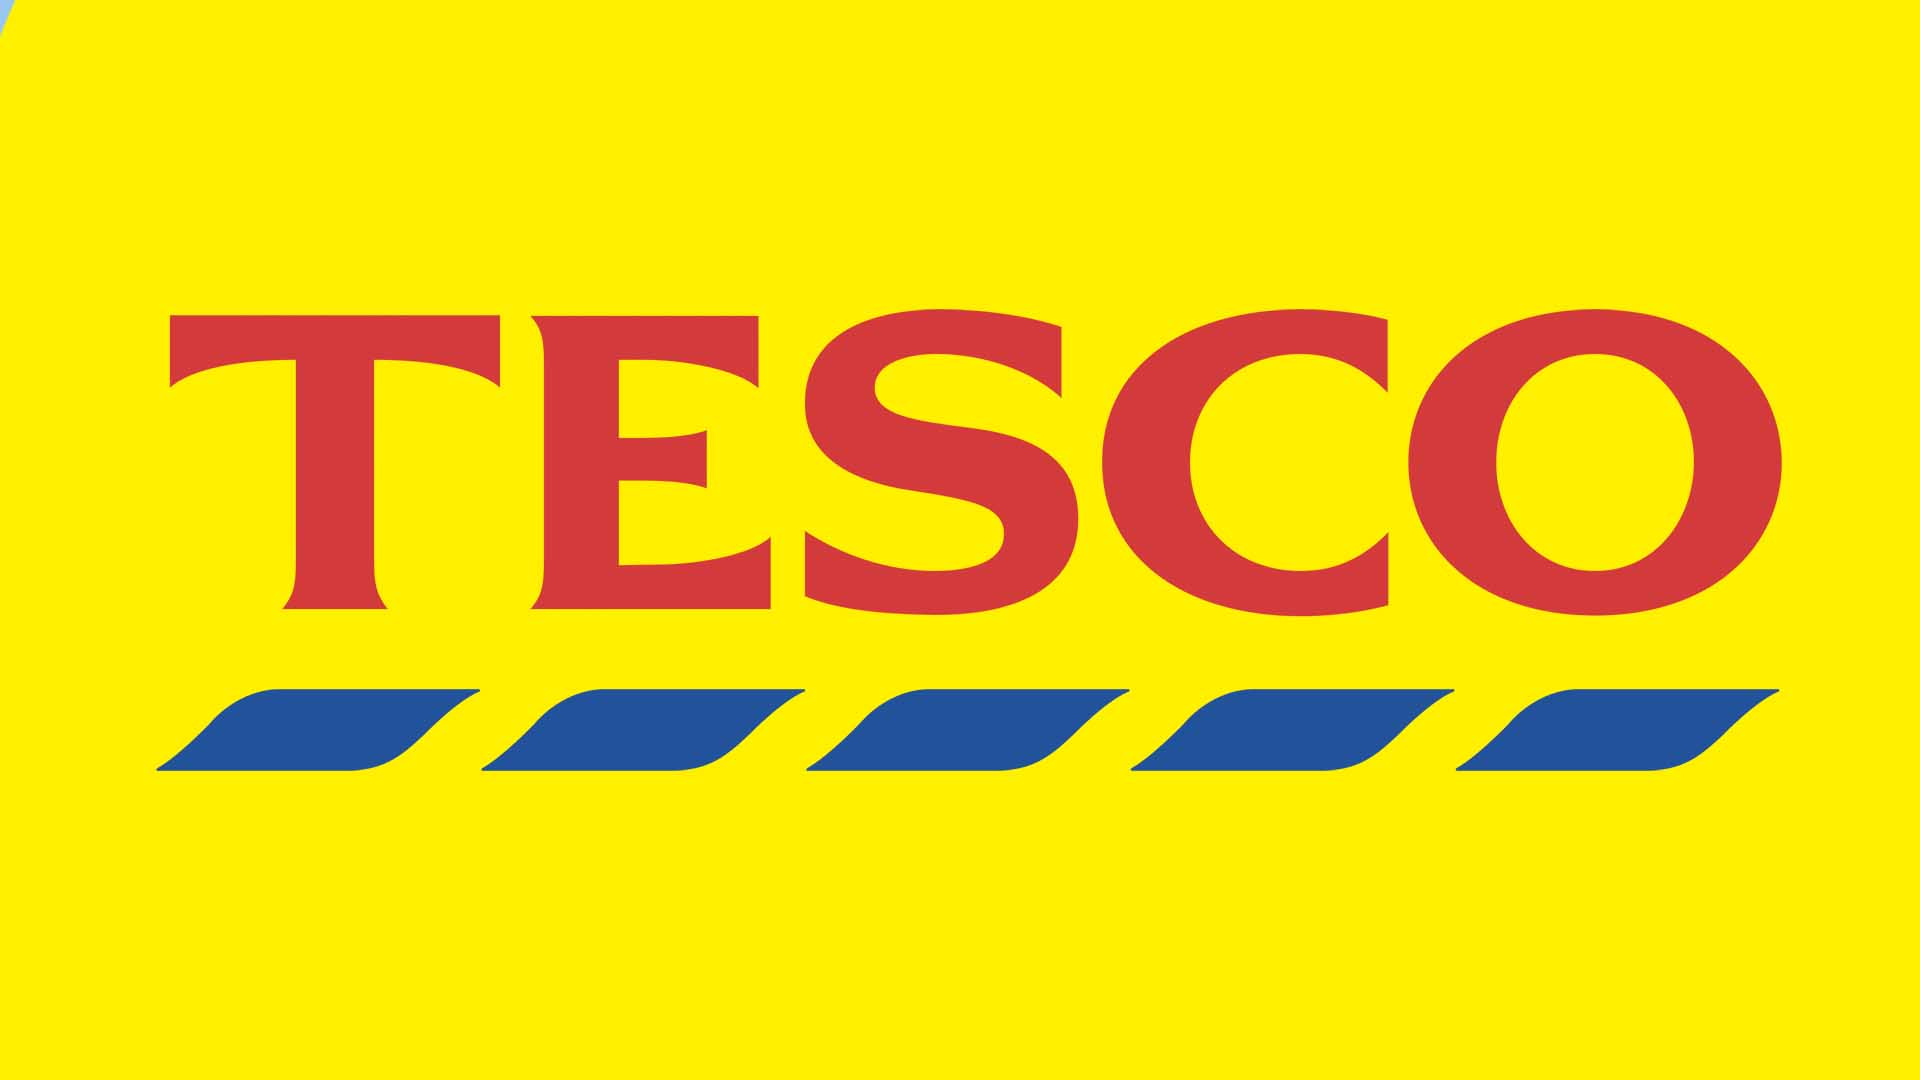 A Tesco logo